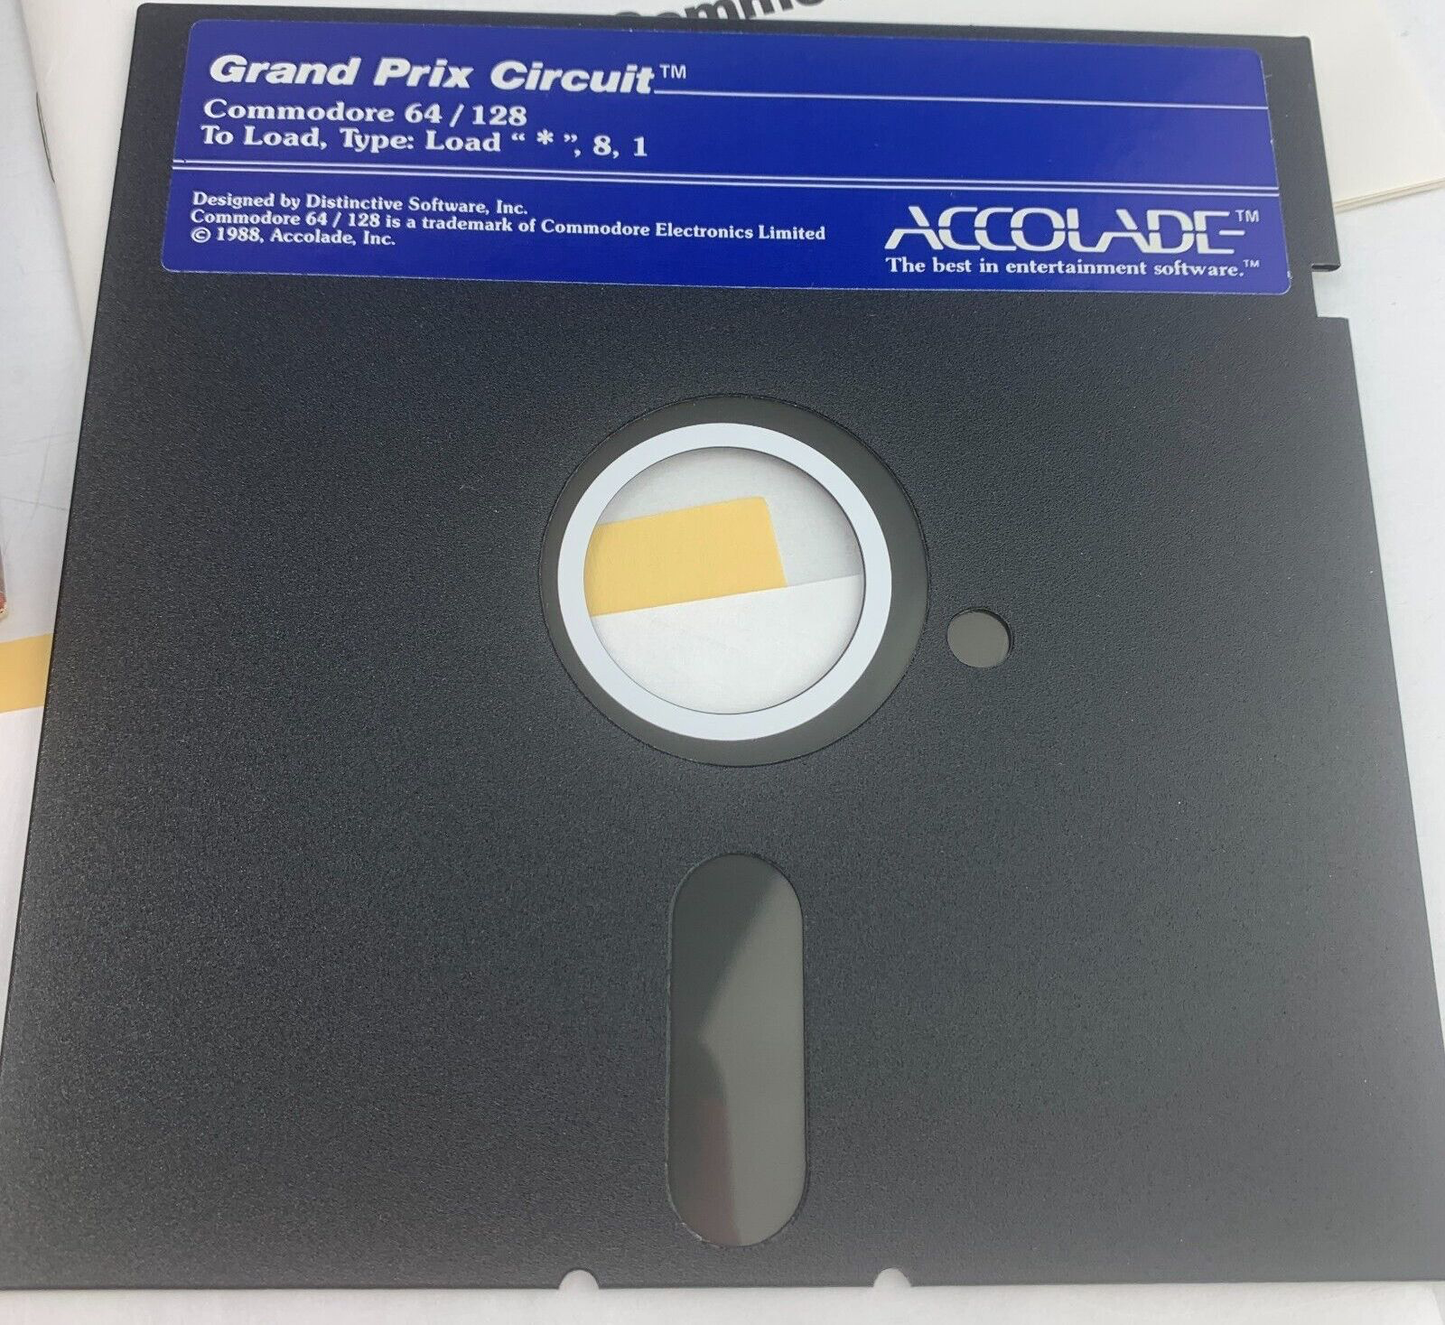 Grand Prix Circuit - Commodore 64